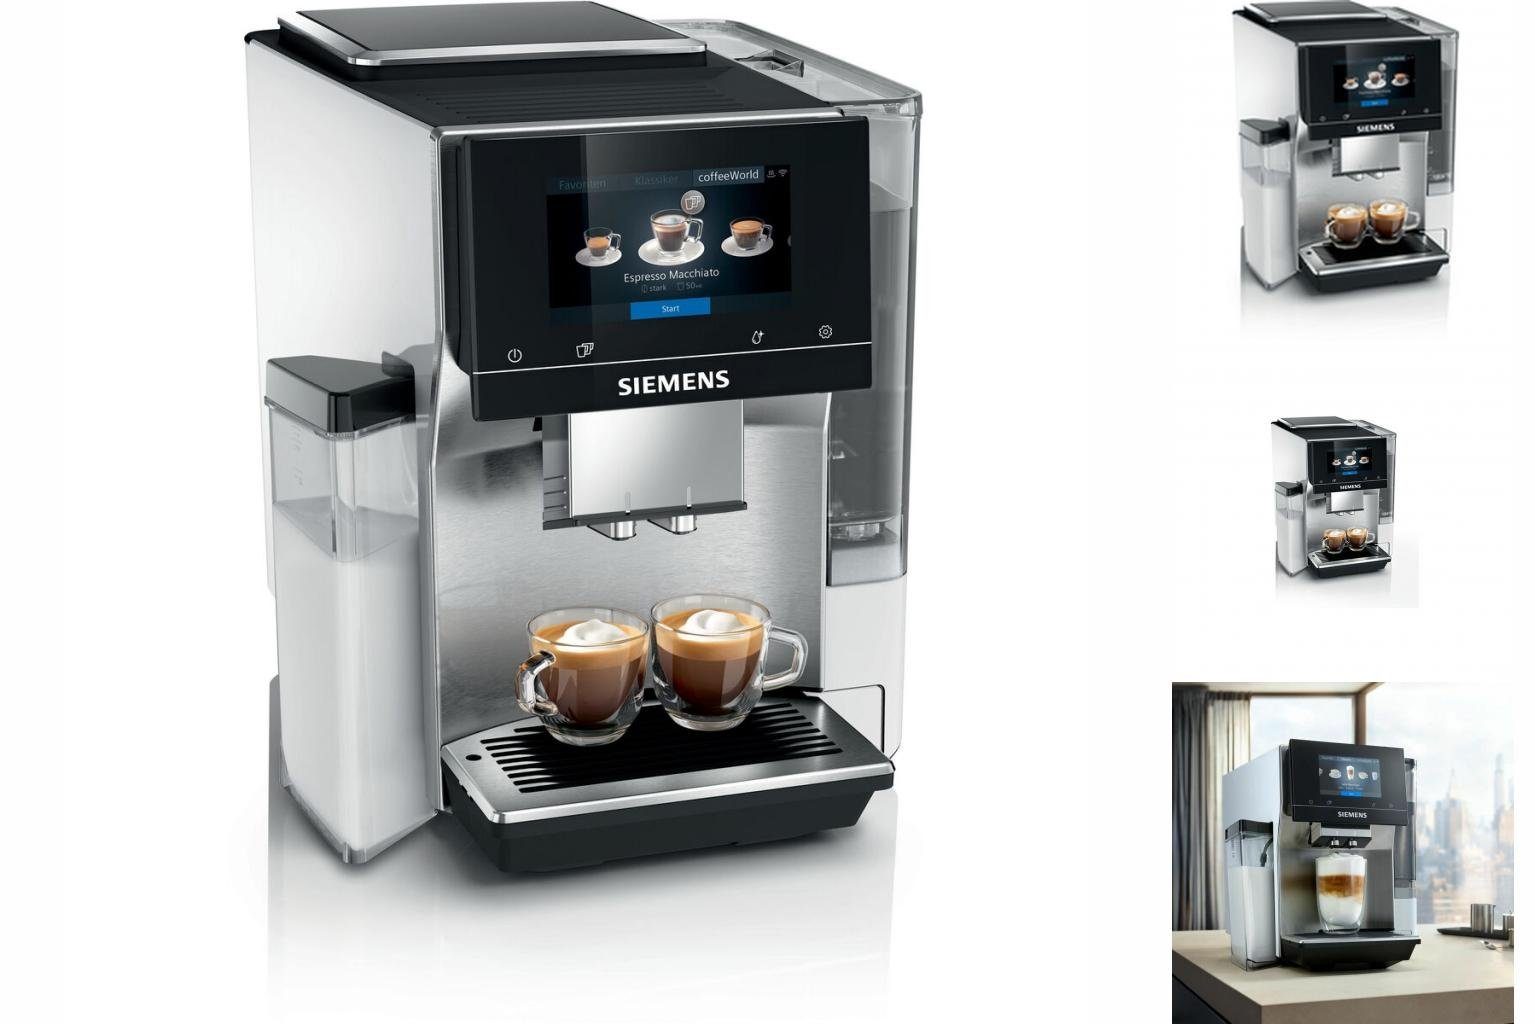 SIEMENS Kaffeevollautomat Superautomatische Kaffeemaschine Siemens 1500 TQ705R03 AG W